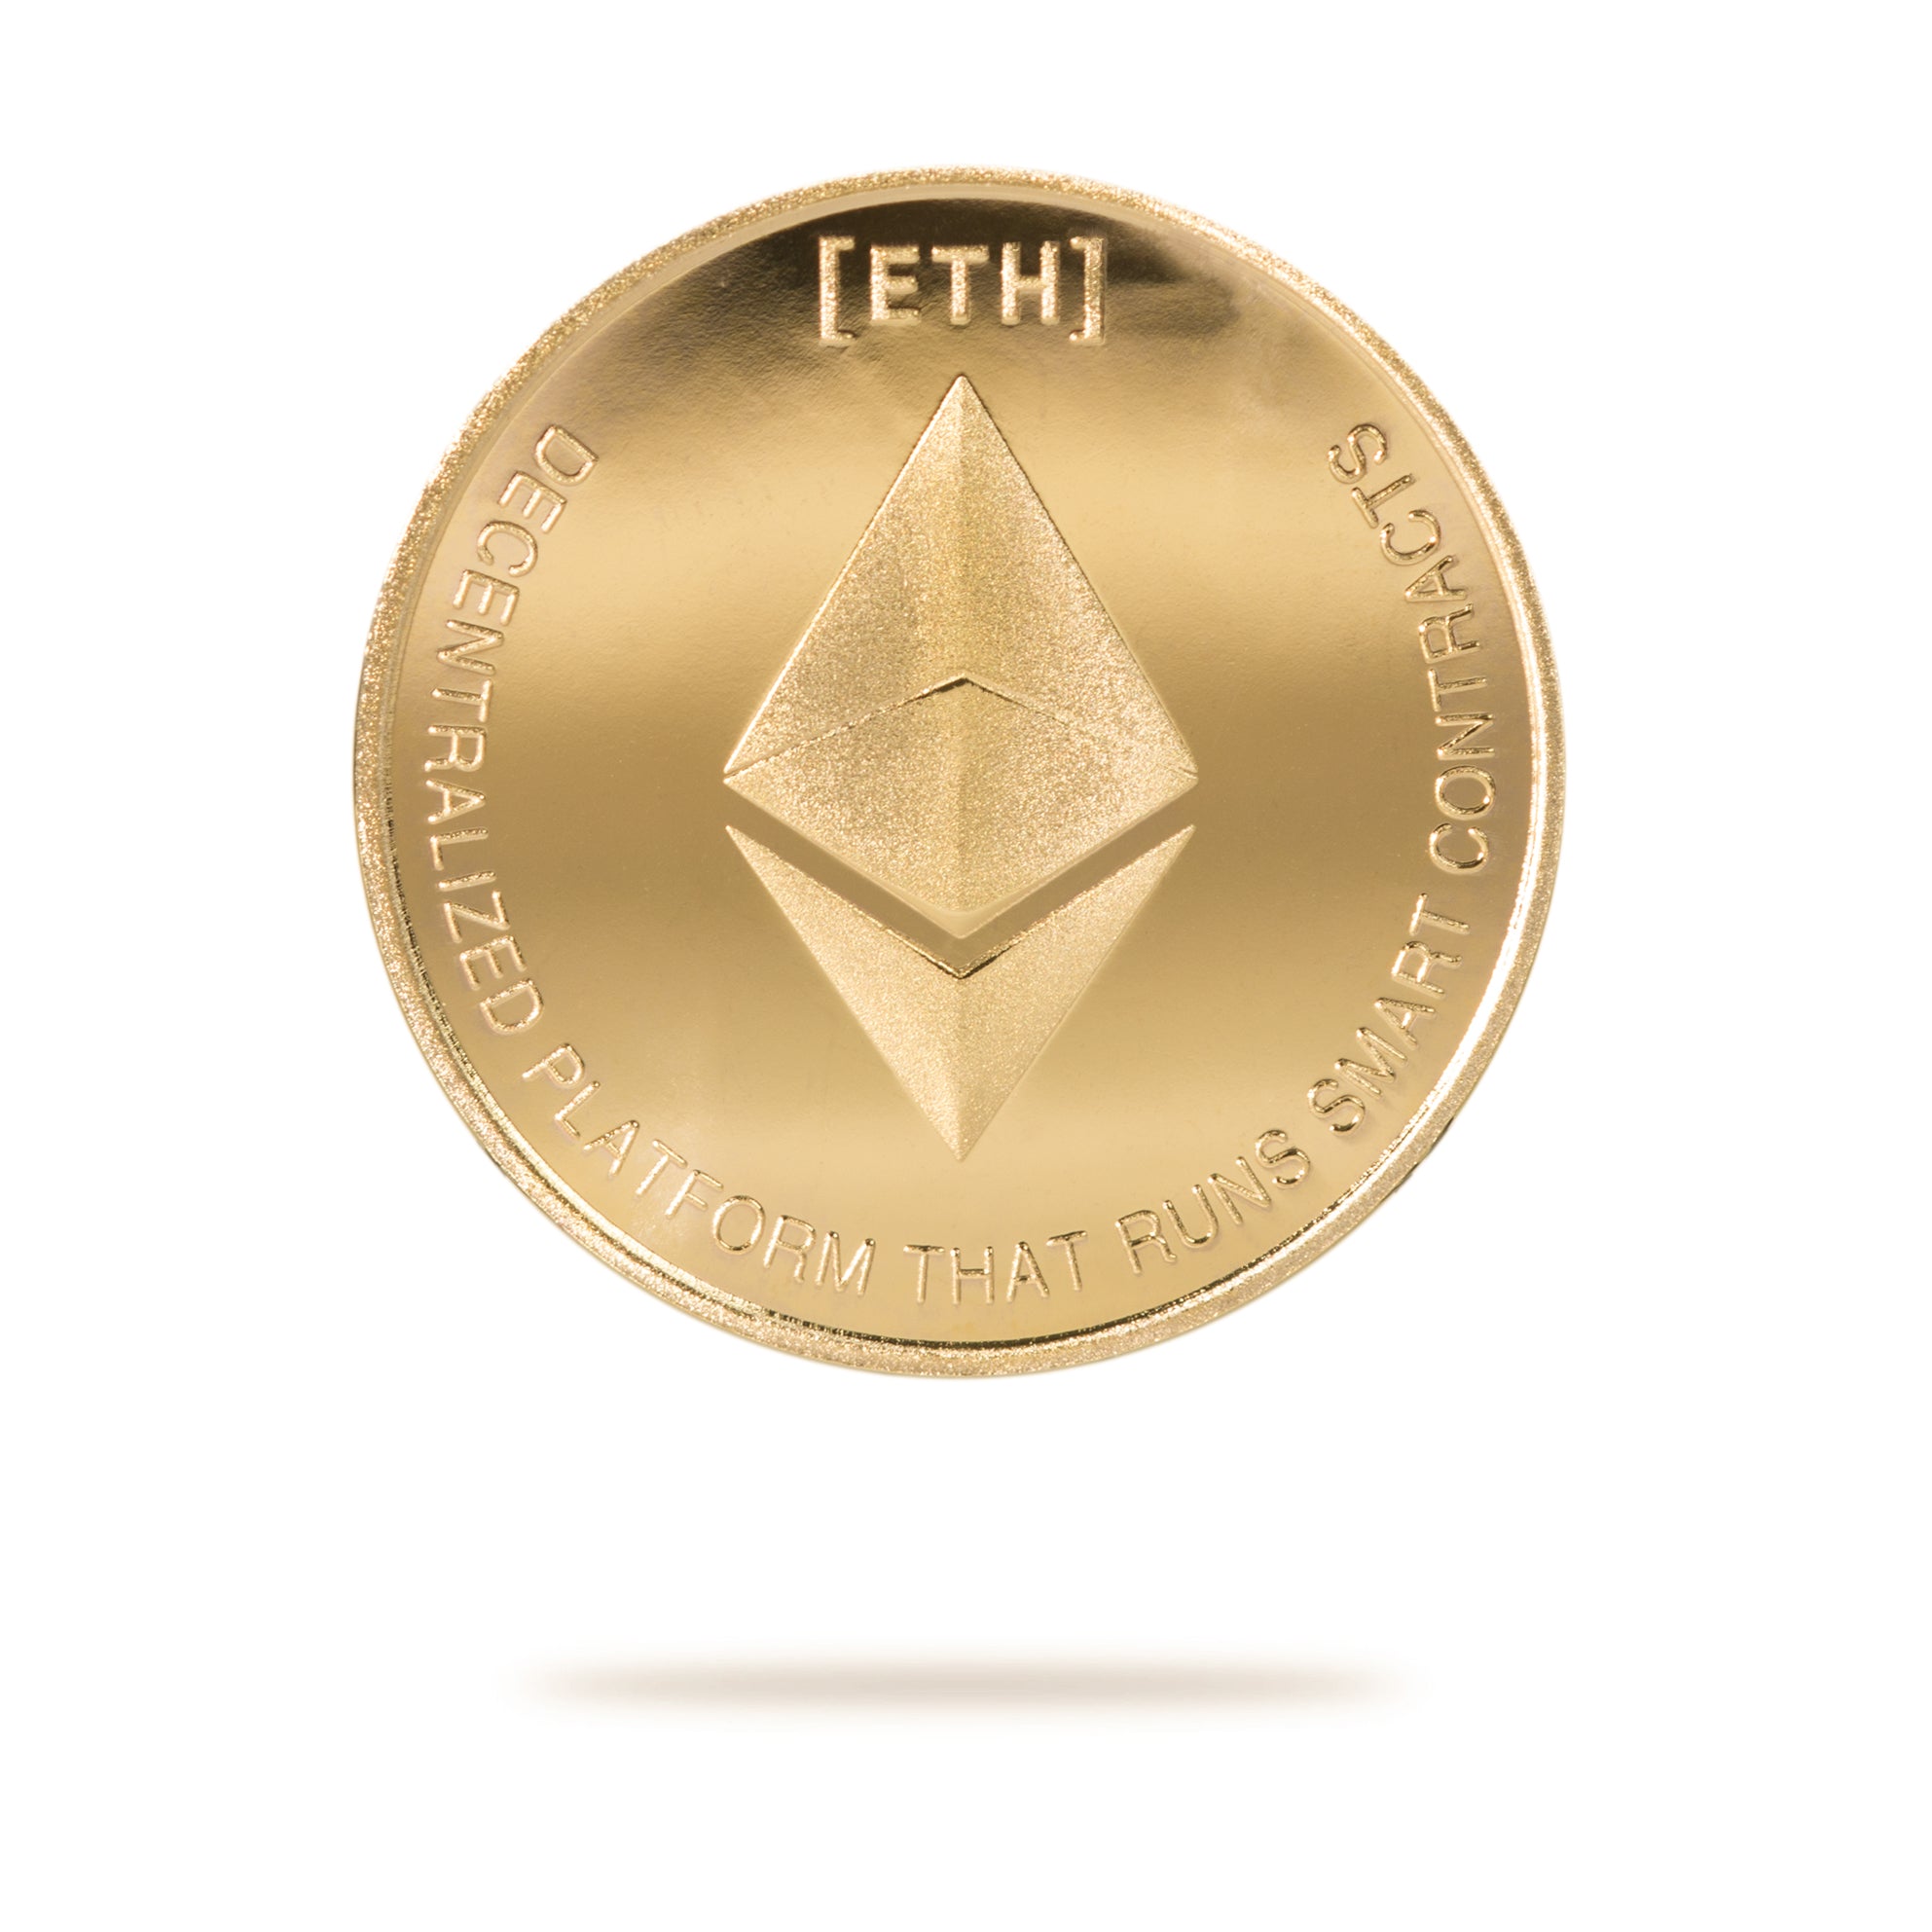 ethereum based defi coins